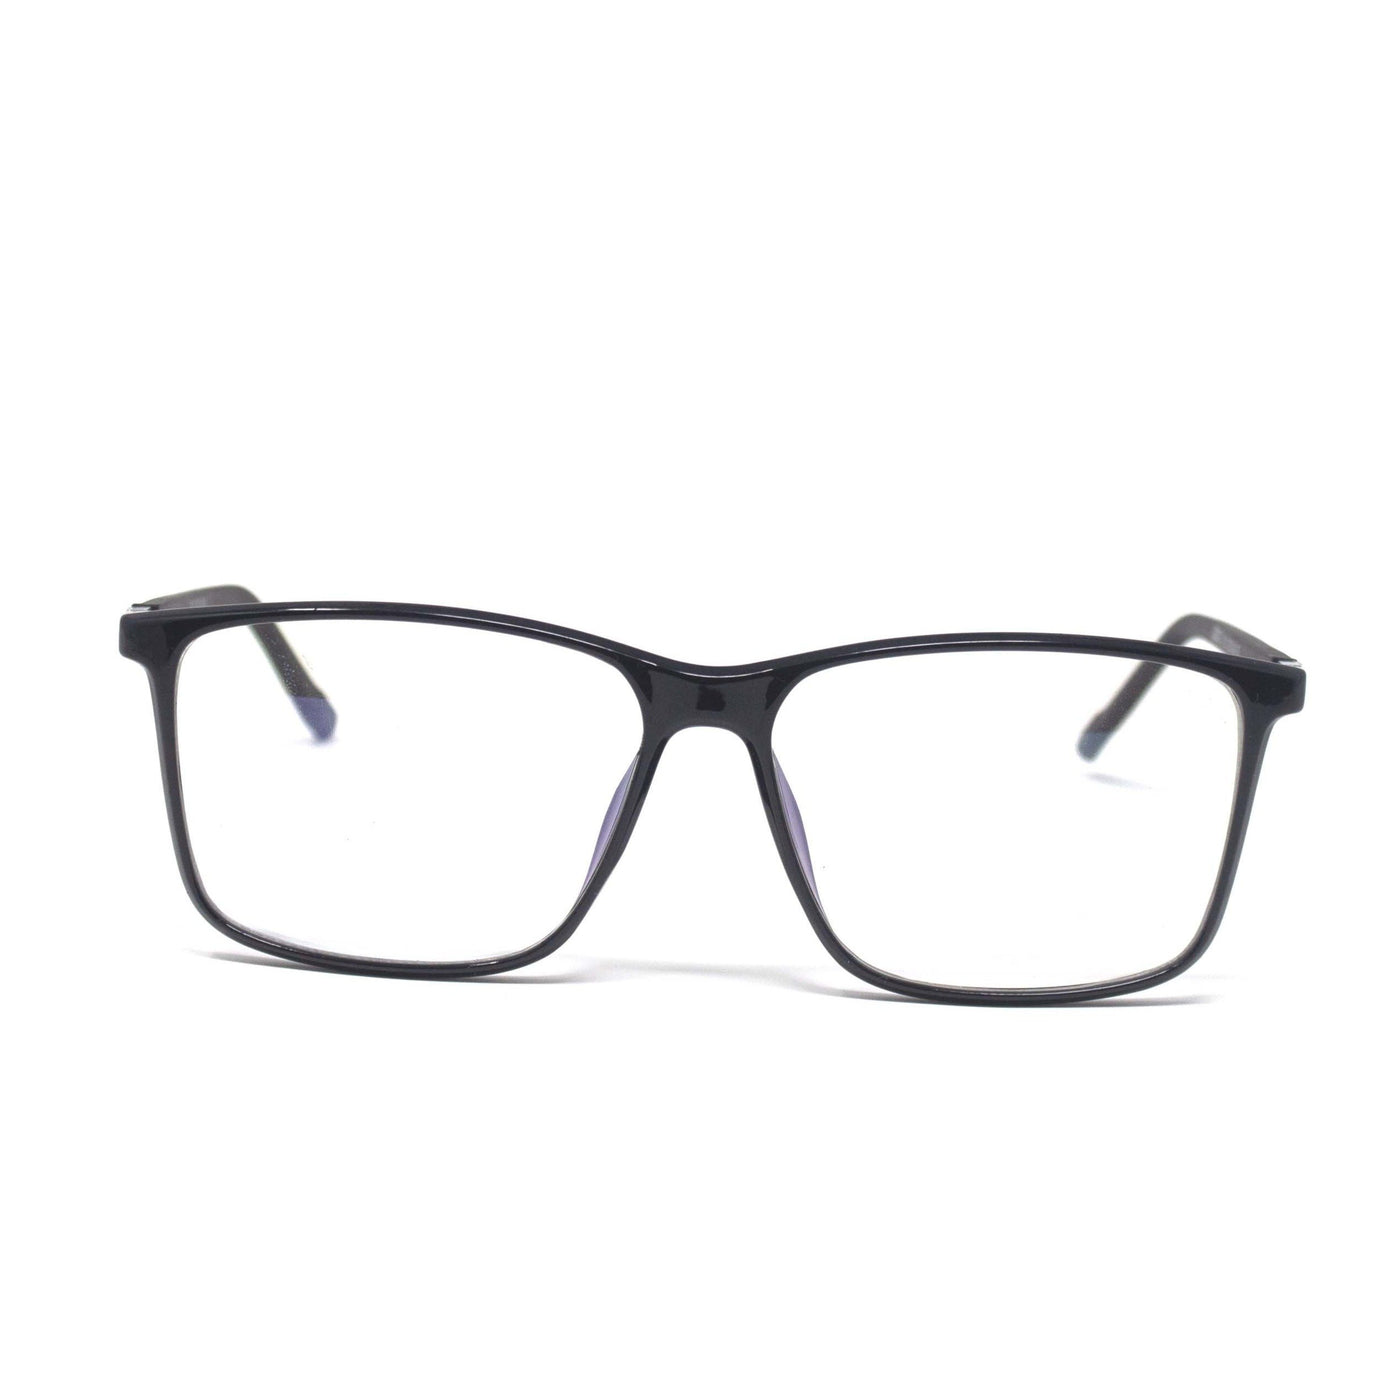 Stylish Optical Retro Square Black Frame Eyewear